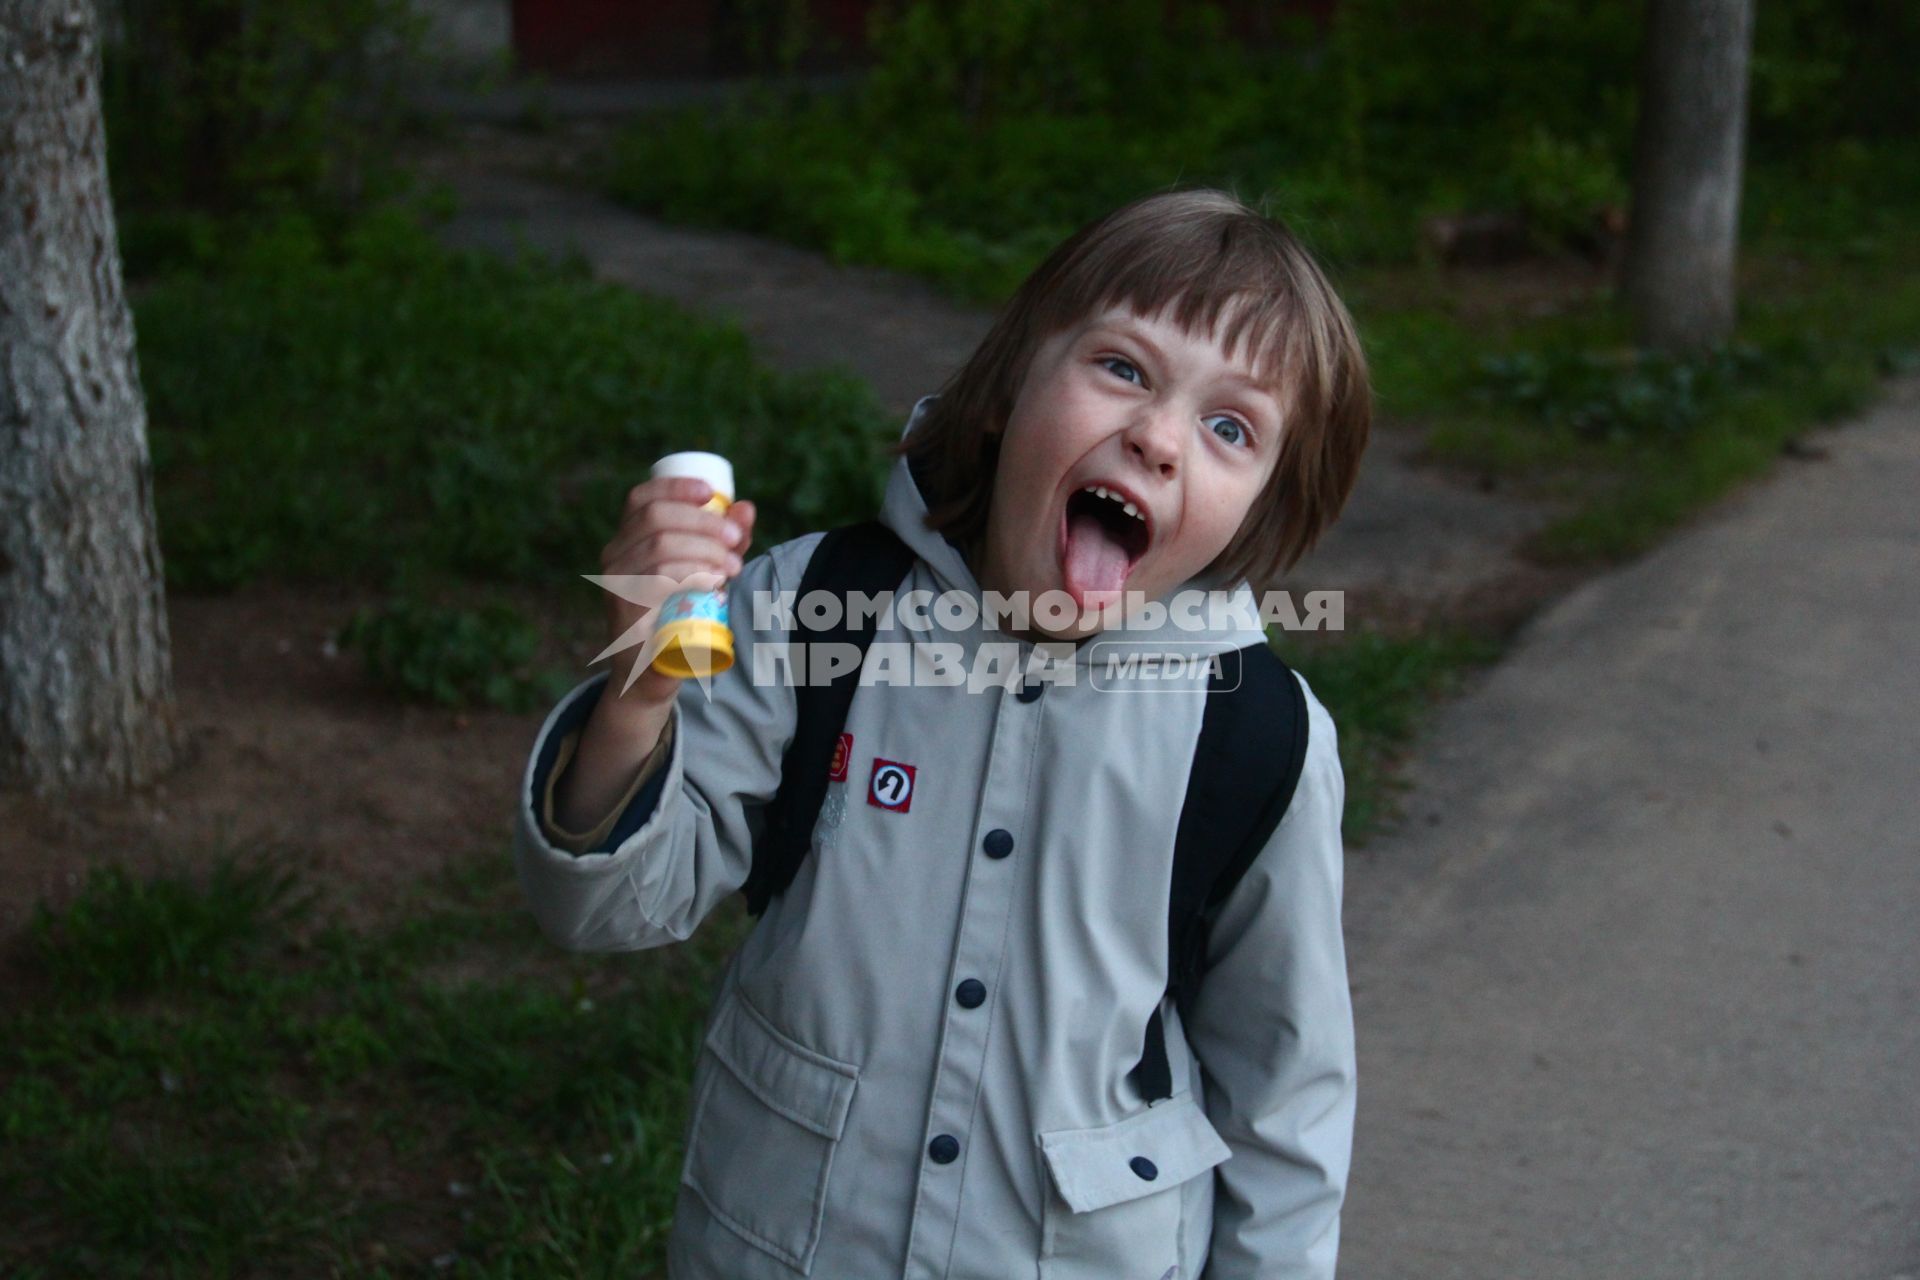 Нижний Новгород. Мальчик показывает язык.